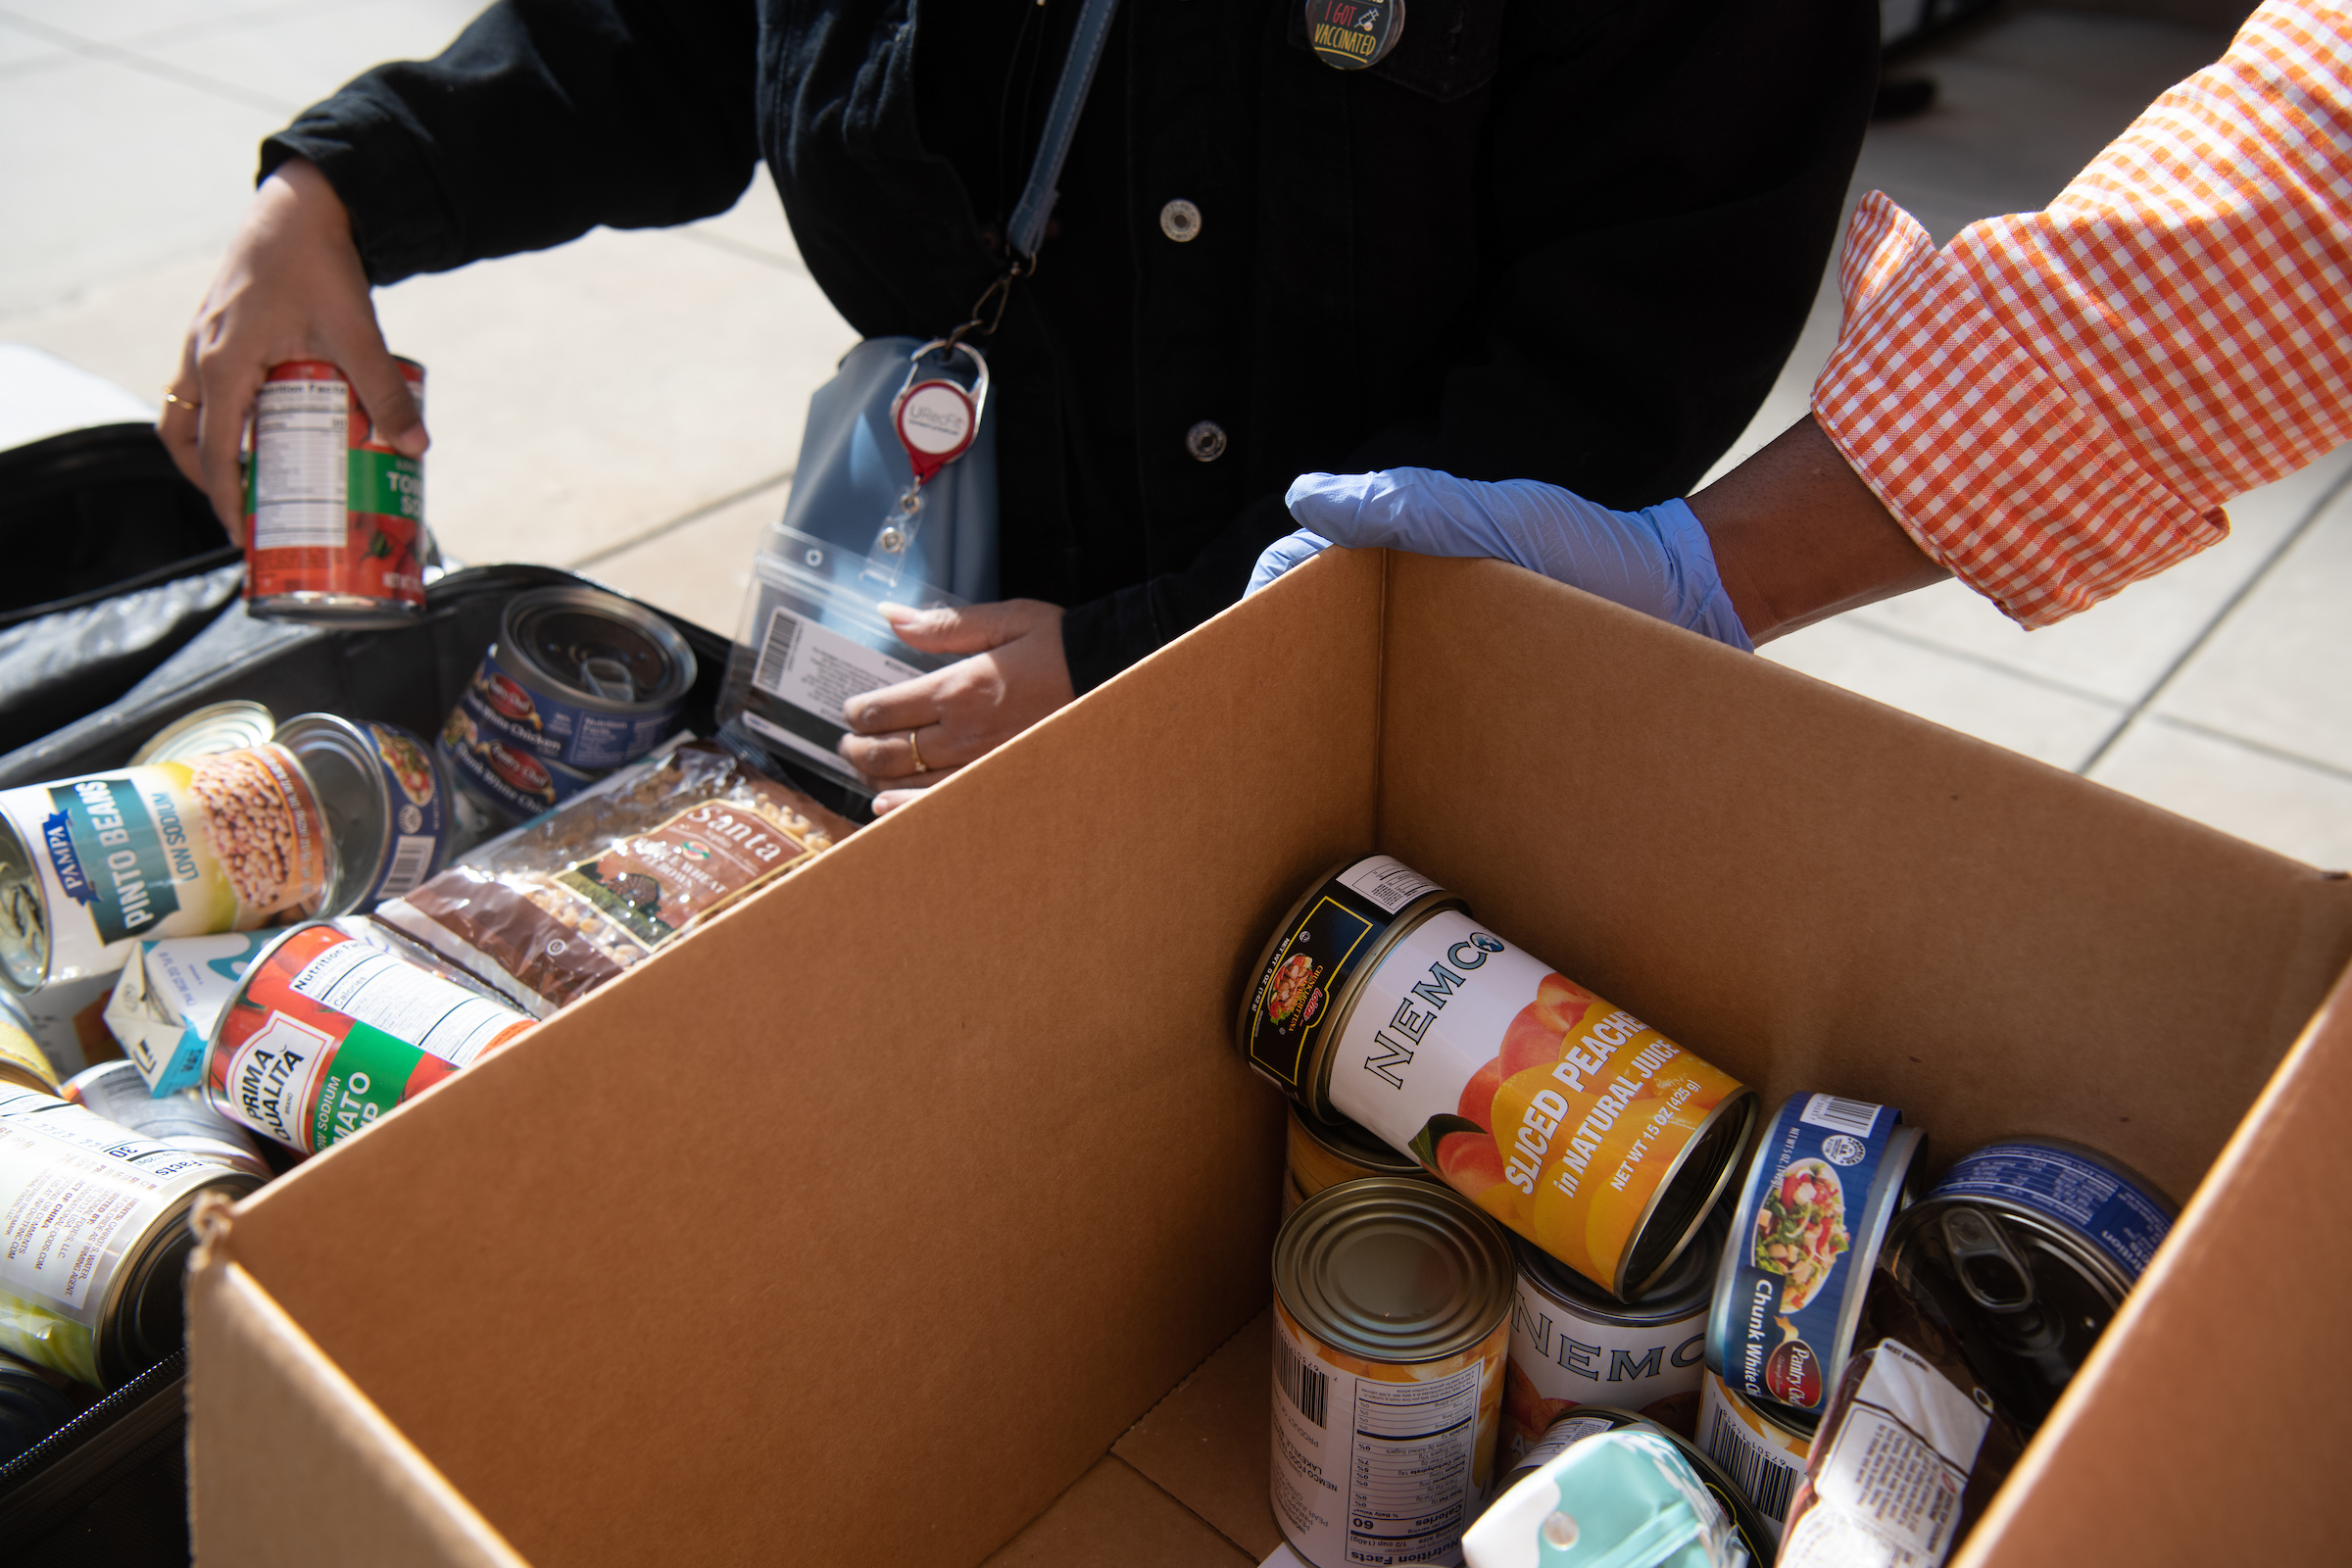 Volunteers put food in boxes